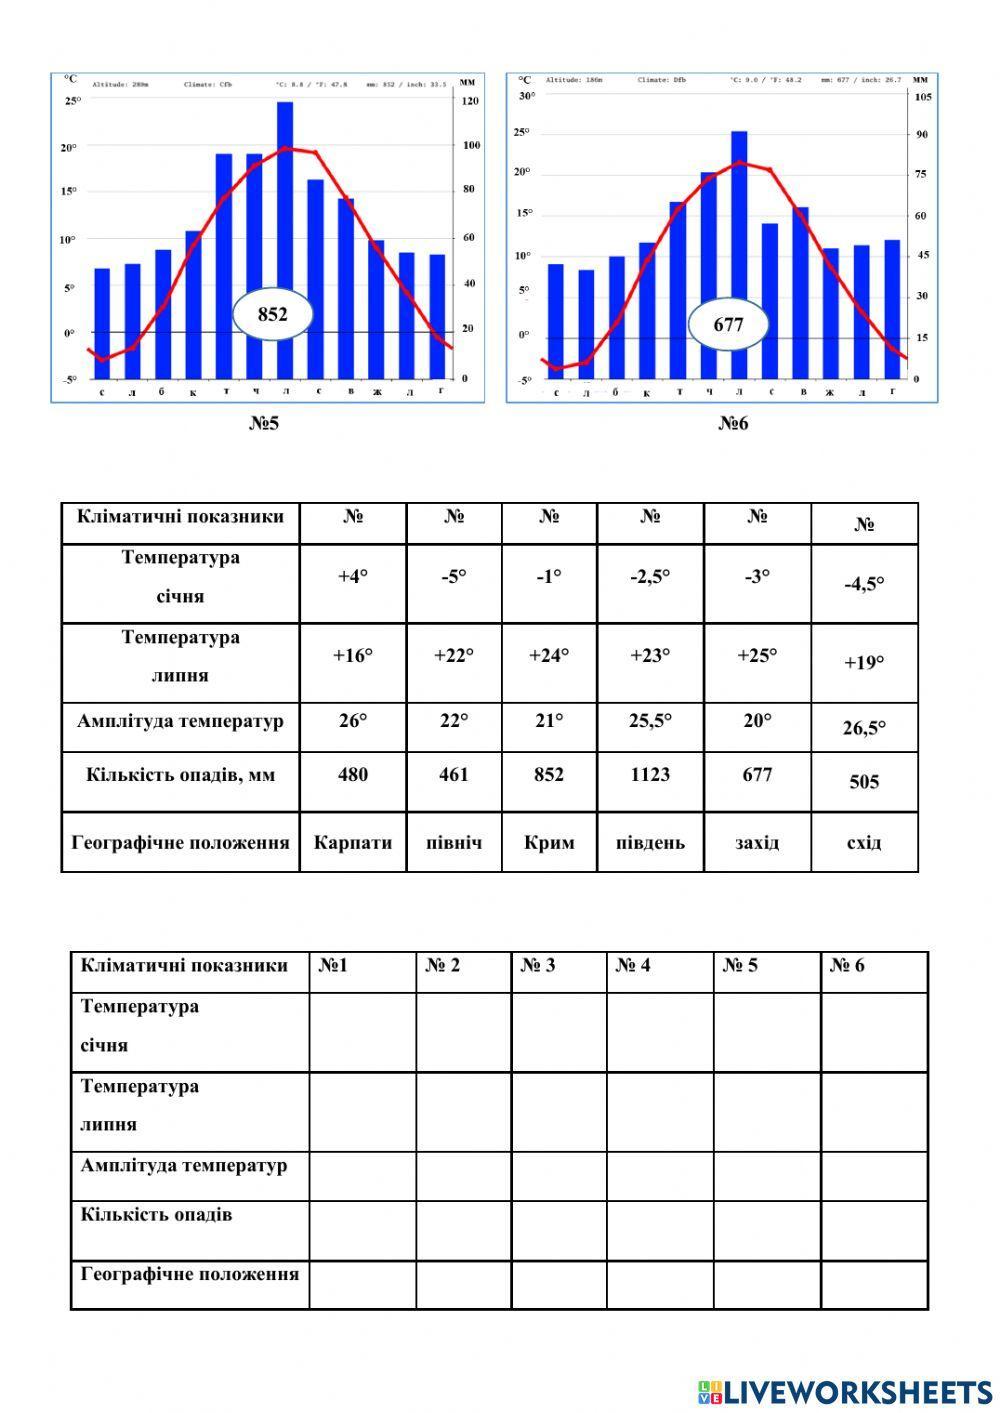 Практична робота №6 Встановлення особливостей клімату різних регіонів України за аналізом карт та кліматичних діаграм.